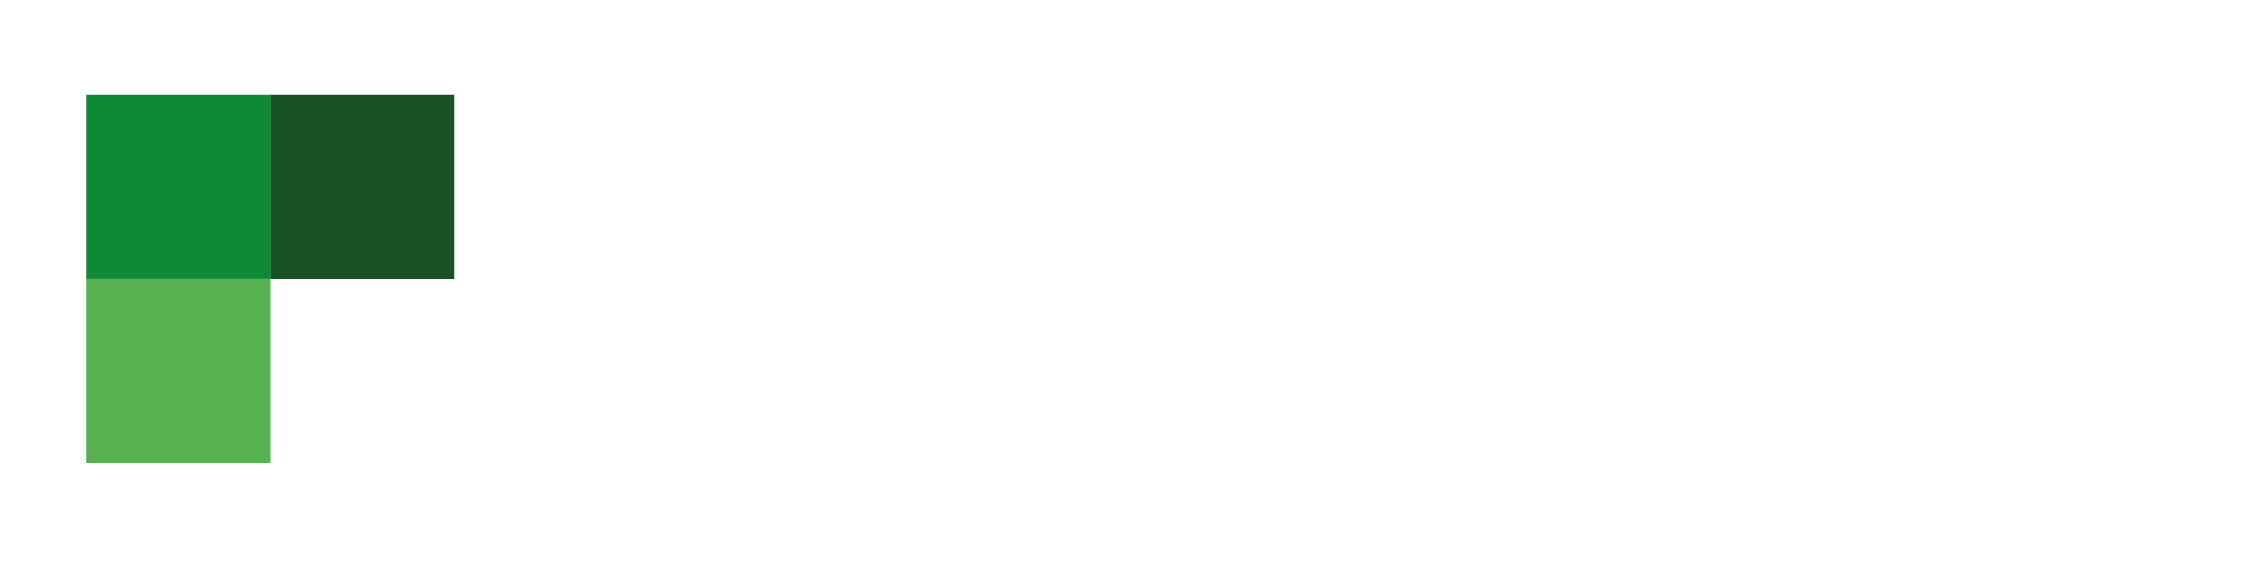 Fair Invest Logo - Nachhaltig Regional